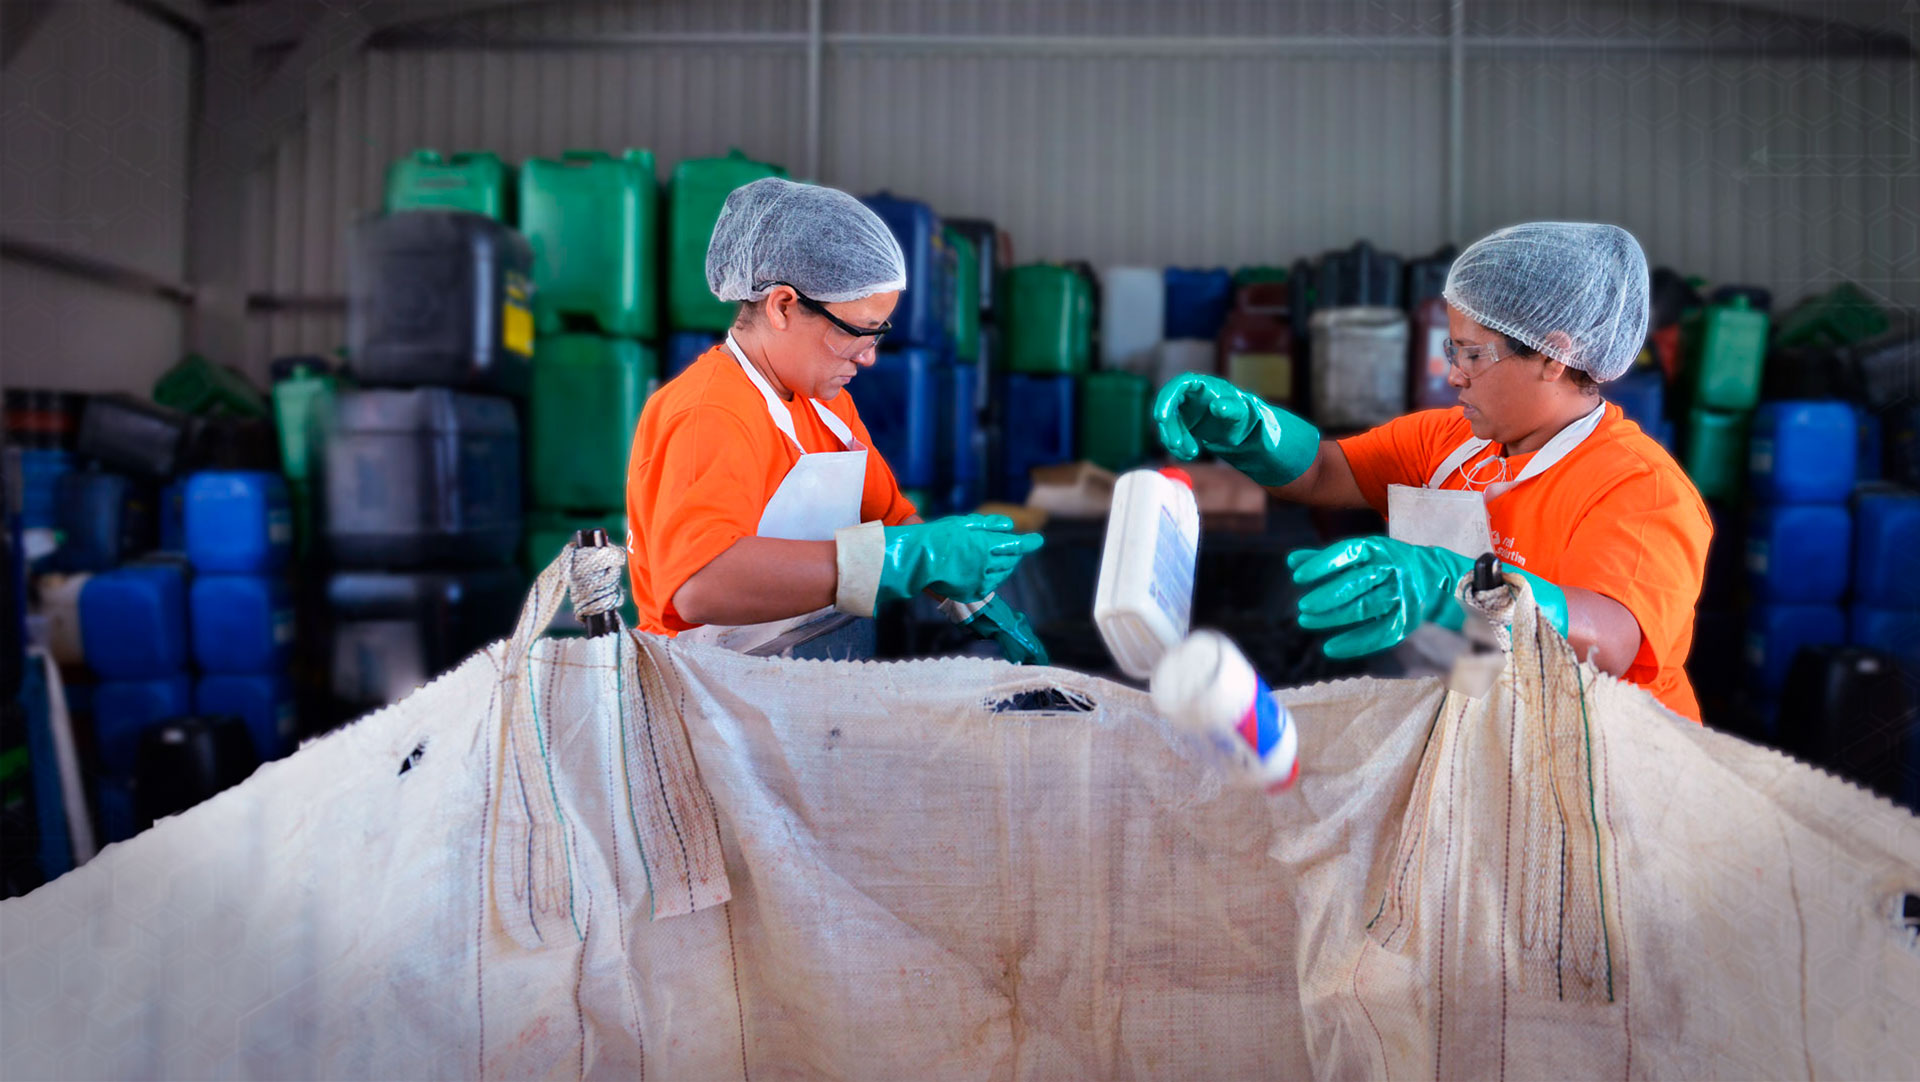 Instituto Jogue Limpo contribui para reciclagem de 500 mil toneladas de  óleo usado no setor – Óleo Certo